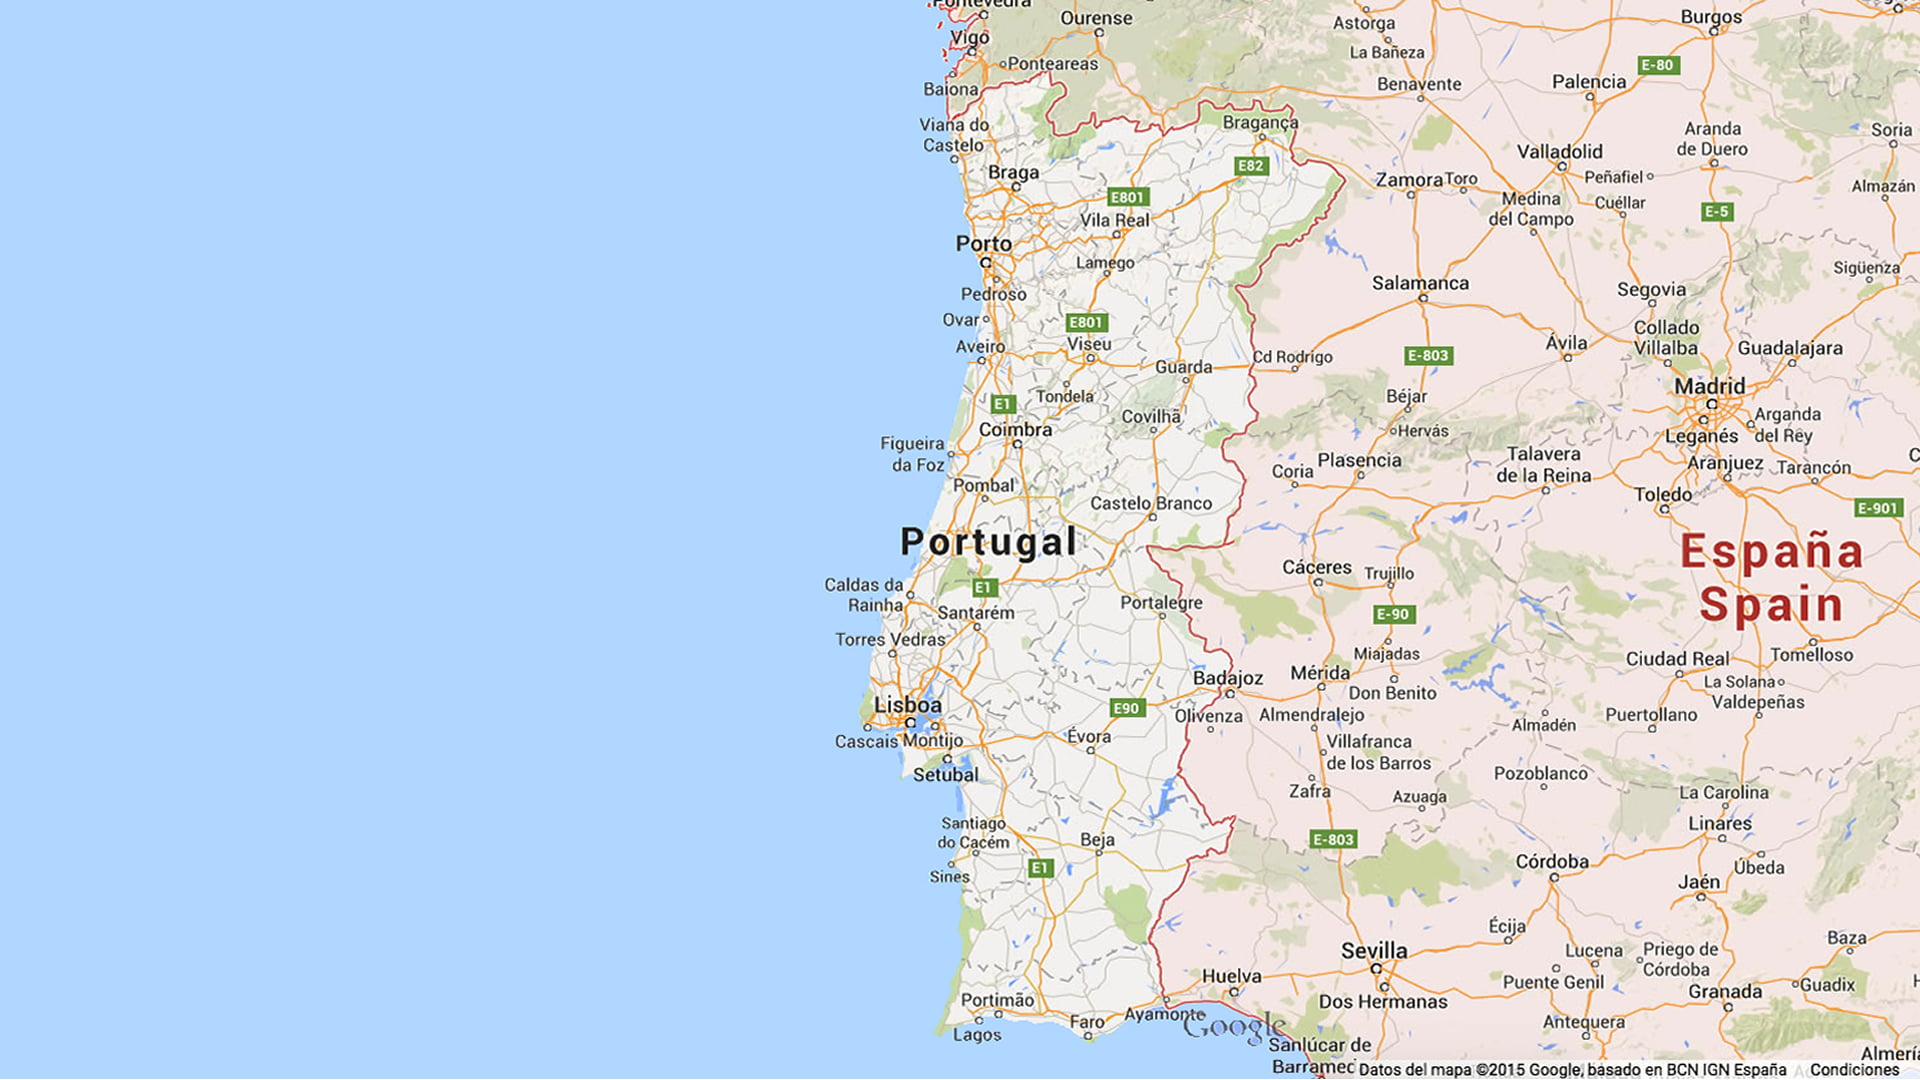 Mapa de Carreteras de España y Portugal MAPAS DE CARRETERAS